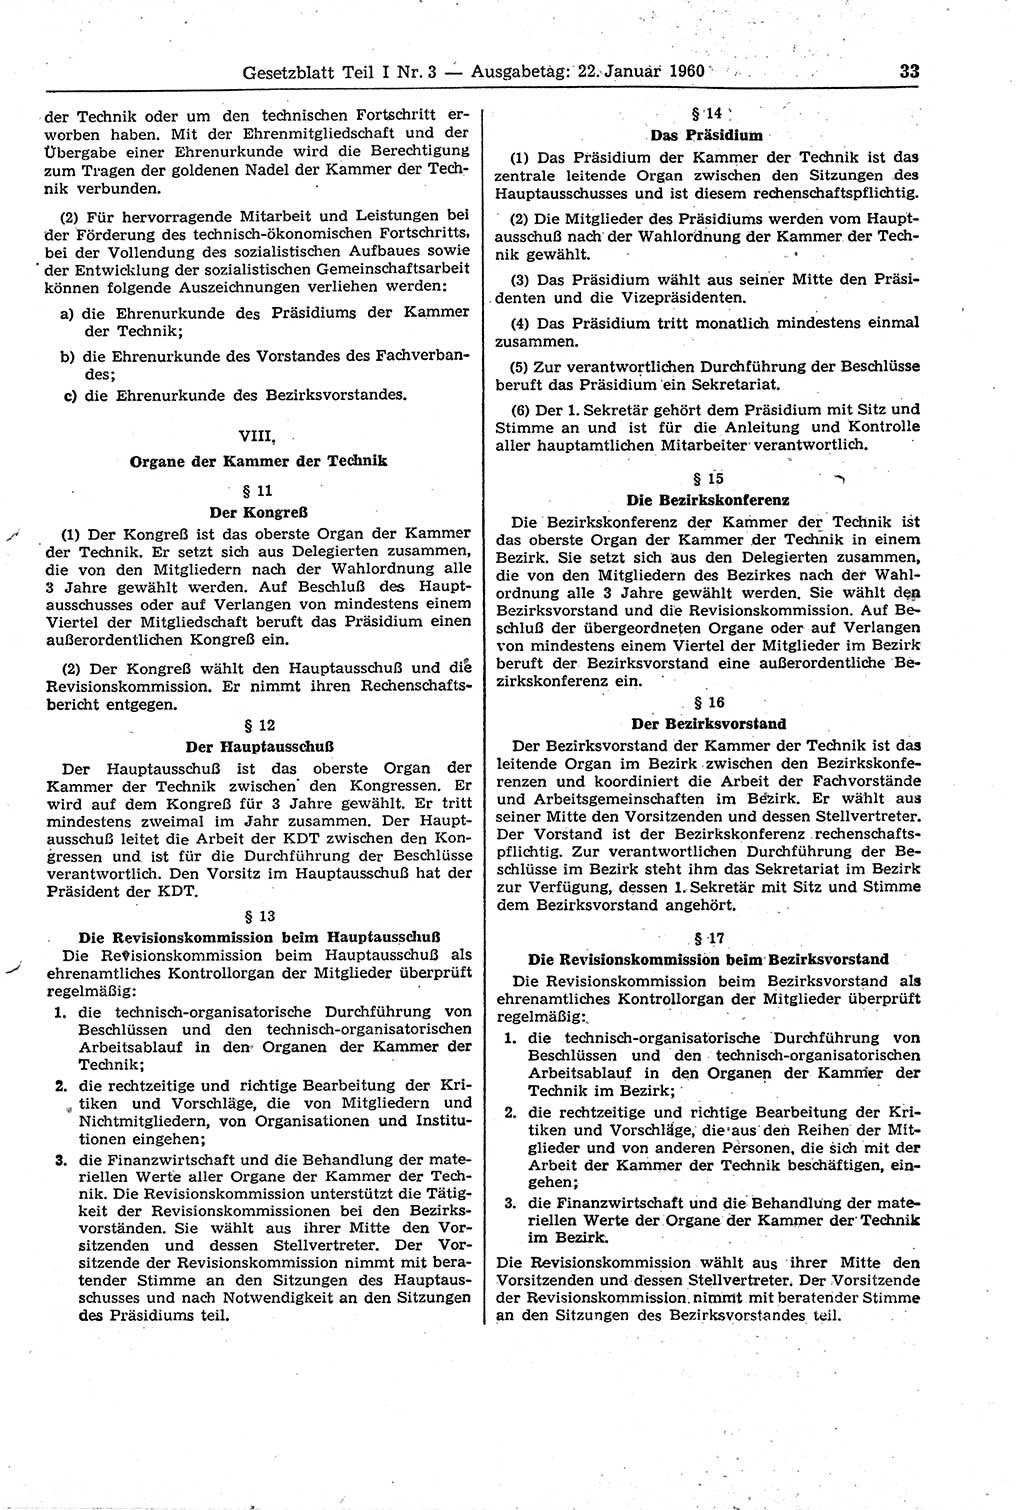 Gesetzblatt (GBl.) der Deutschen Demokratischen Republik (DDR) Teil Ⅰ 1960, Seite 33 (GBl. DDR Ⅰ 1960, S. 33)